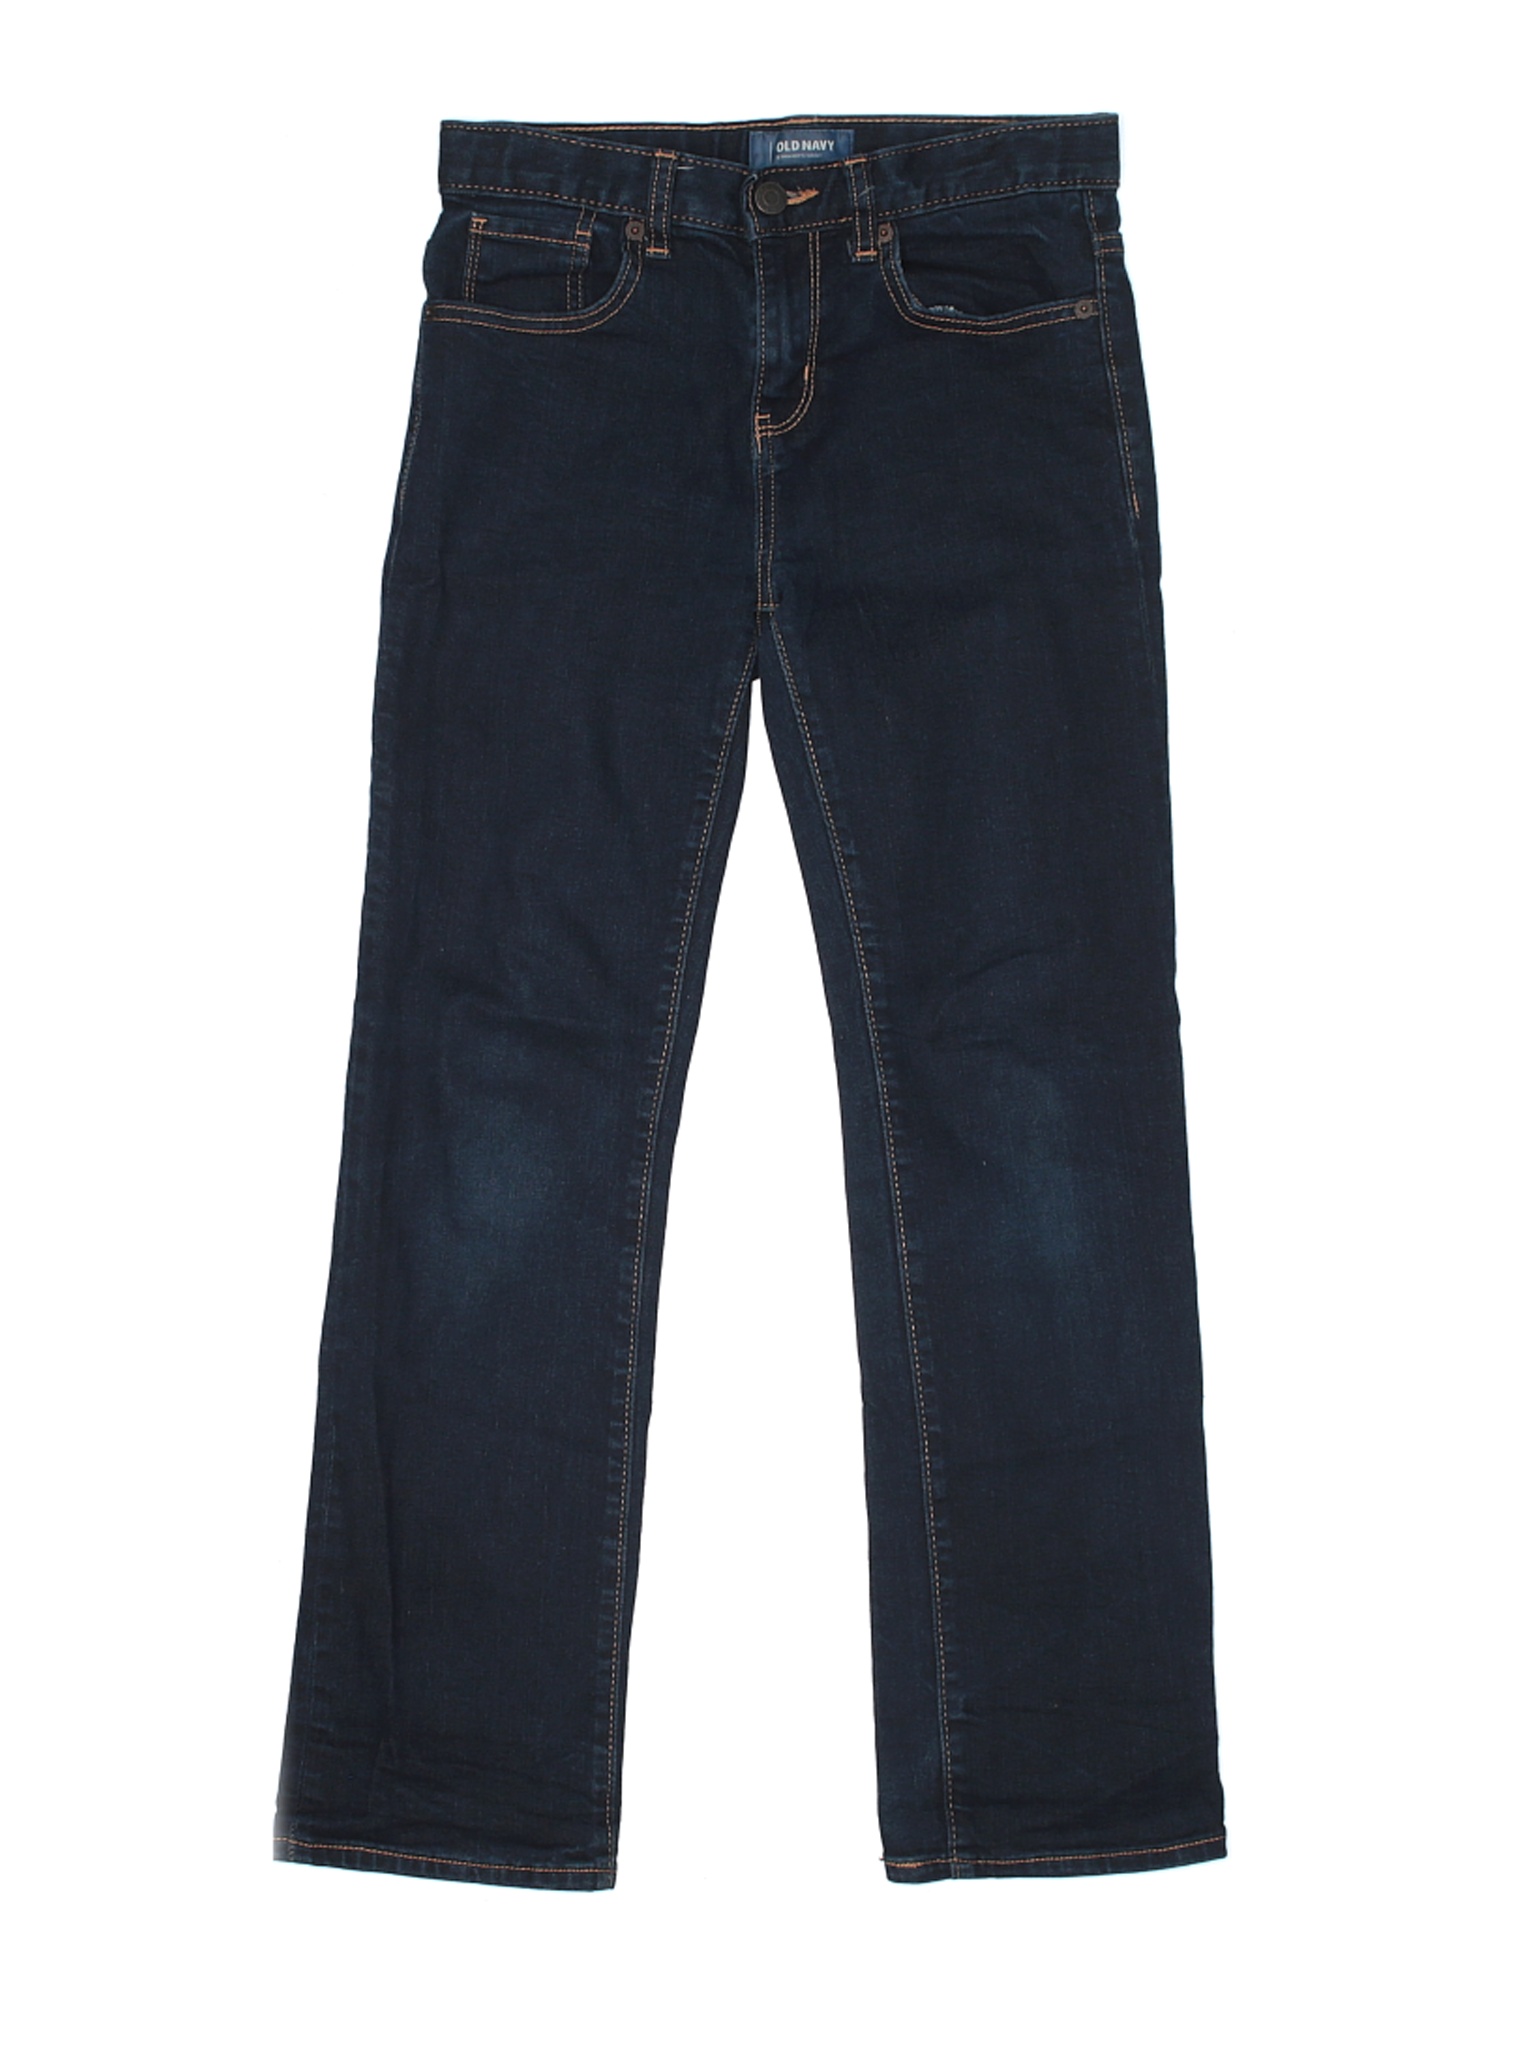 Old Navy Boys Blue Jeans 12 | eBay